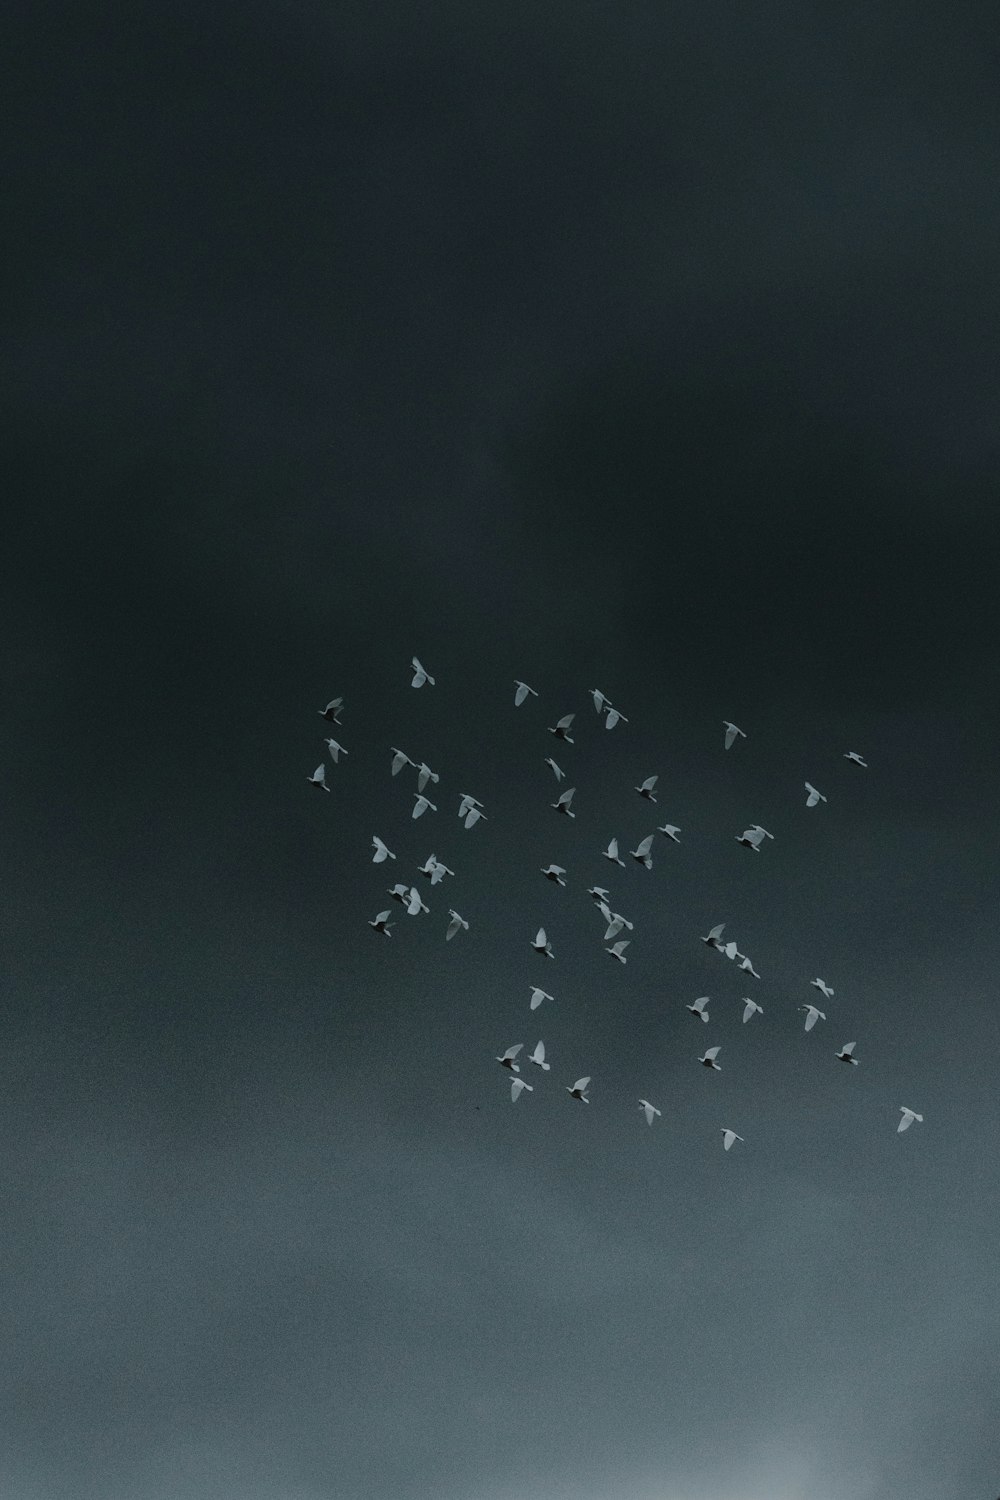 Vogelschwarm fliegt unter dunklem Himmel